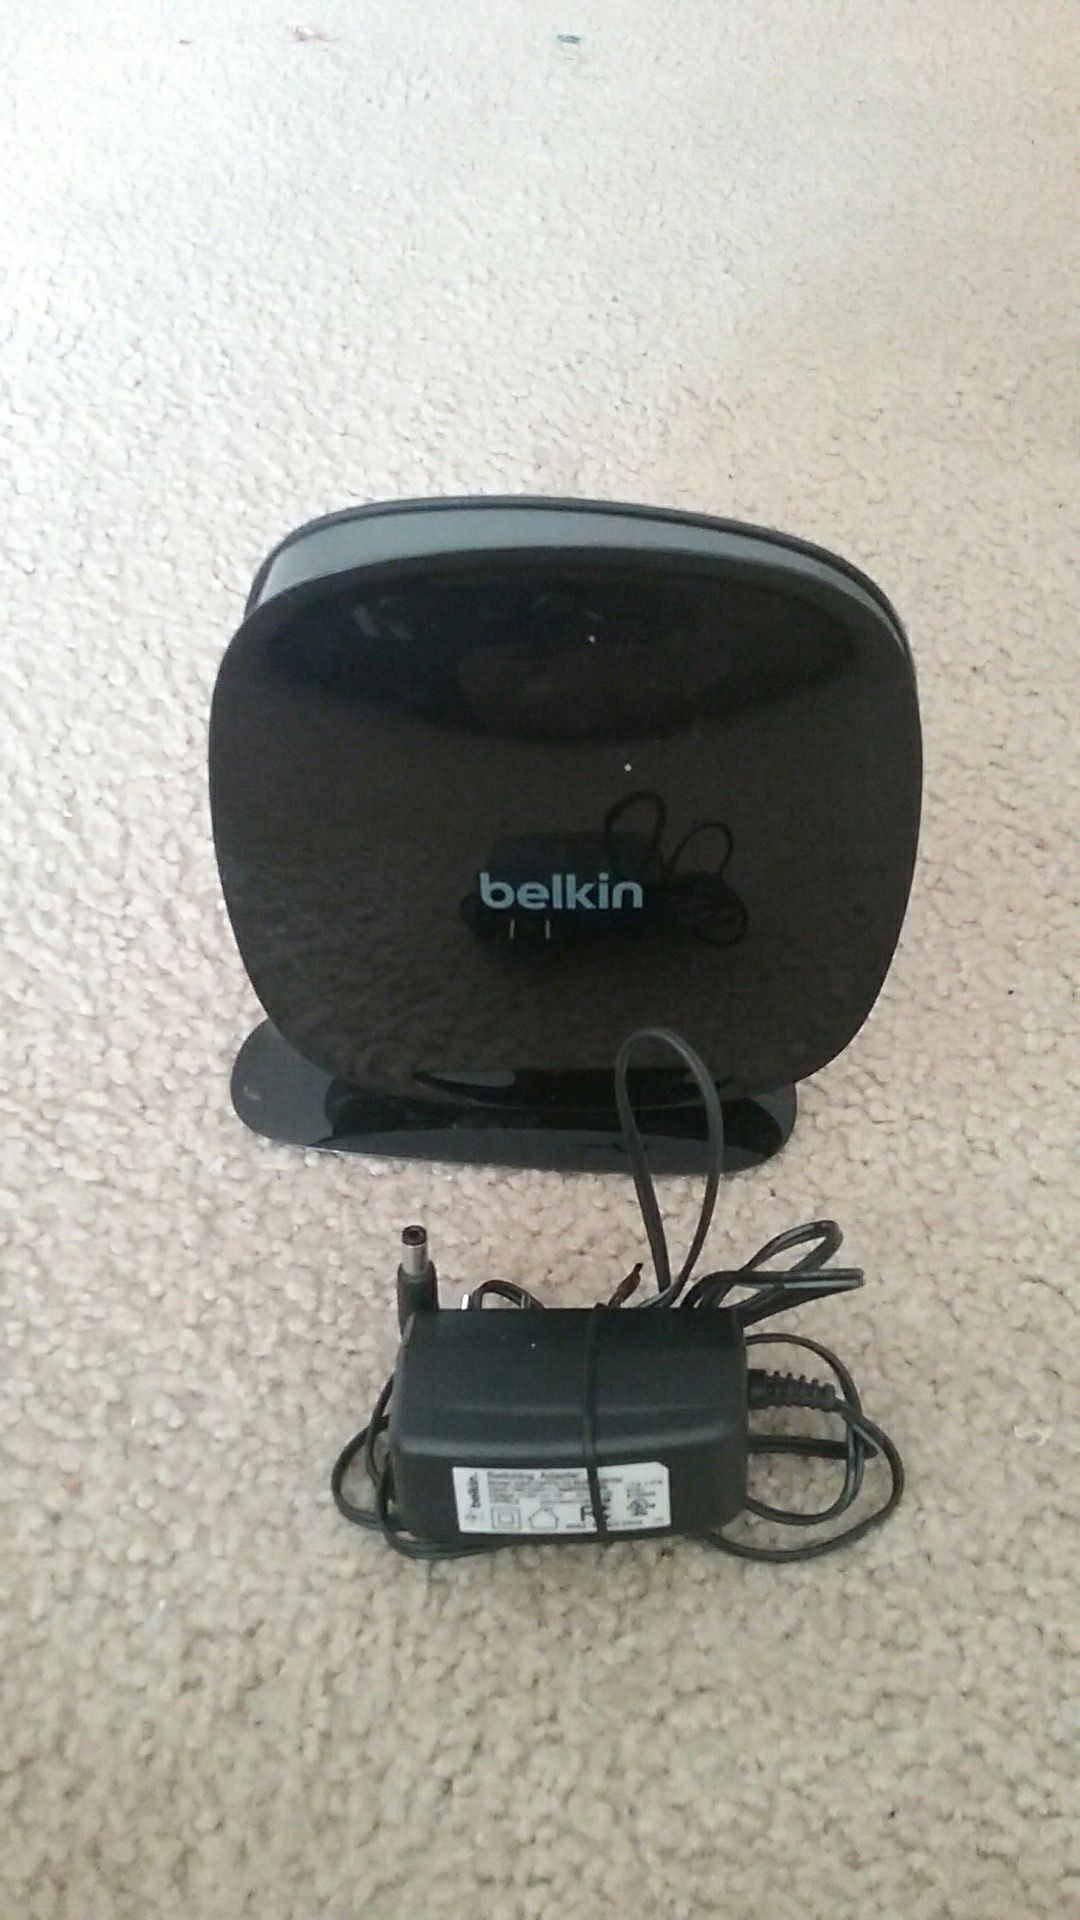 Belkin N600 DB wireless n+ router